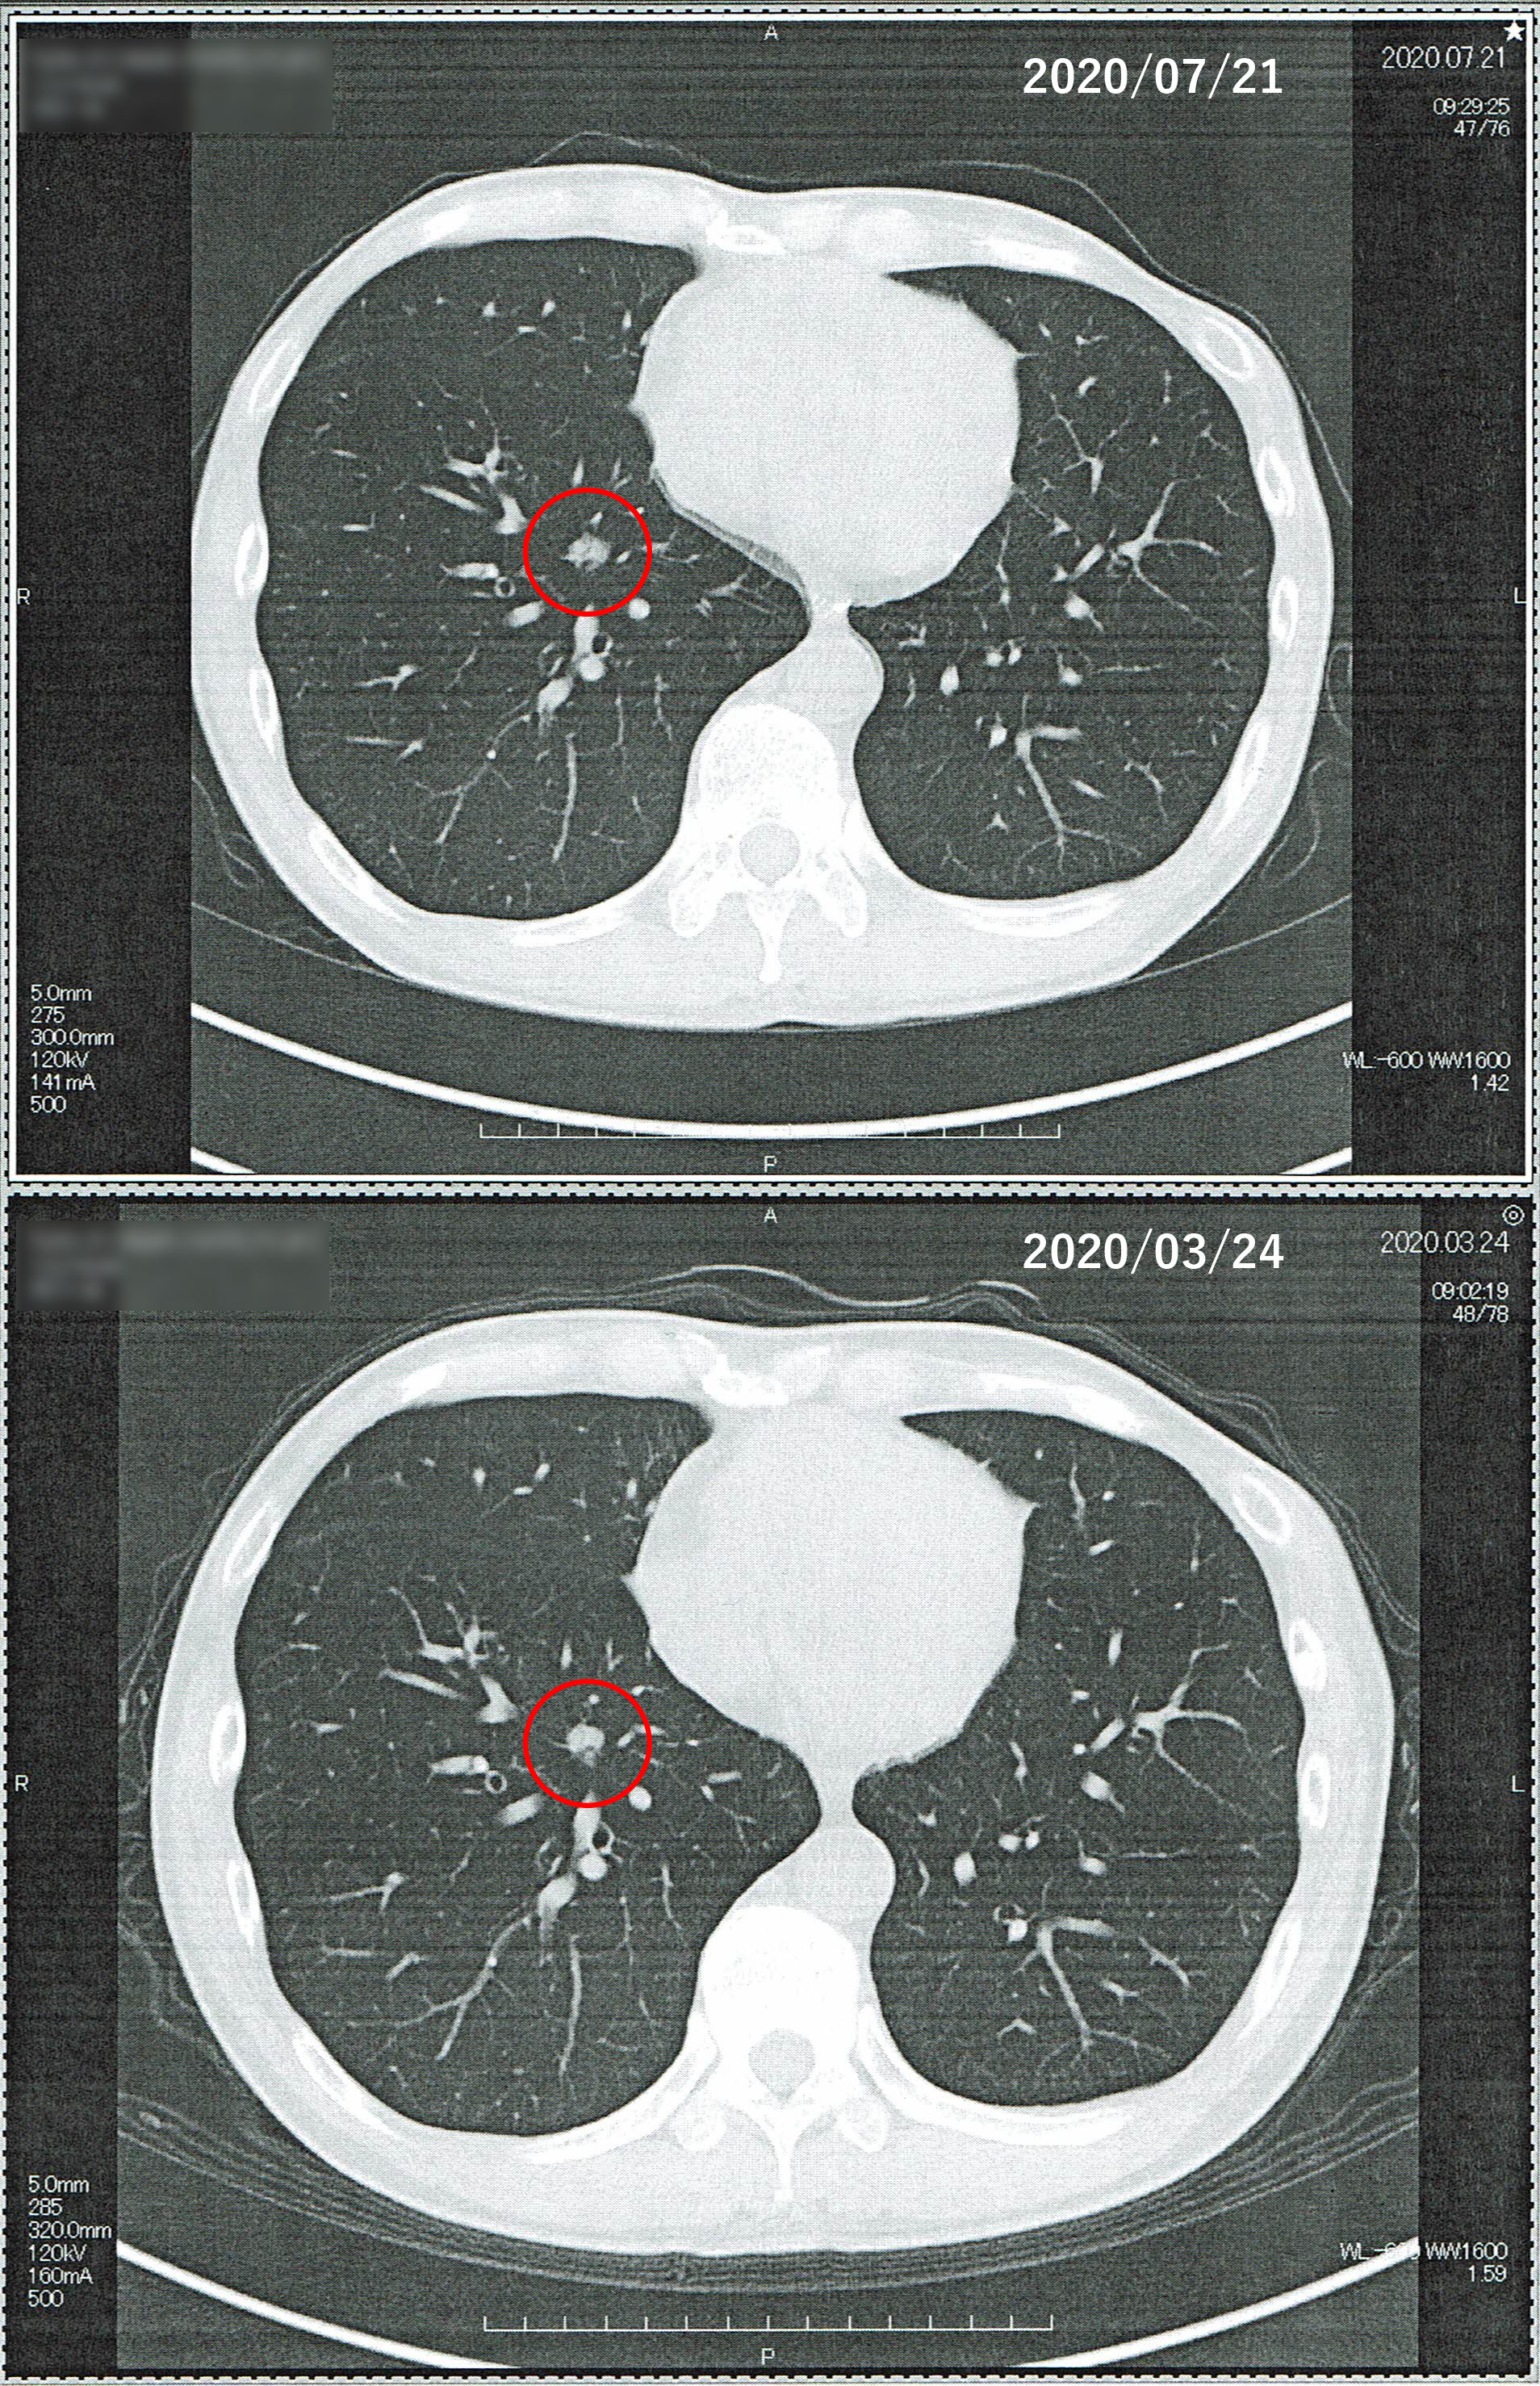 2020年3月24日の胸部CT画像と2020年7月21日の胸部CT画像の比較